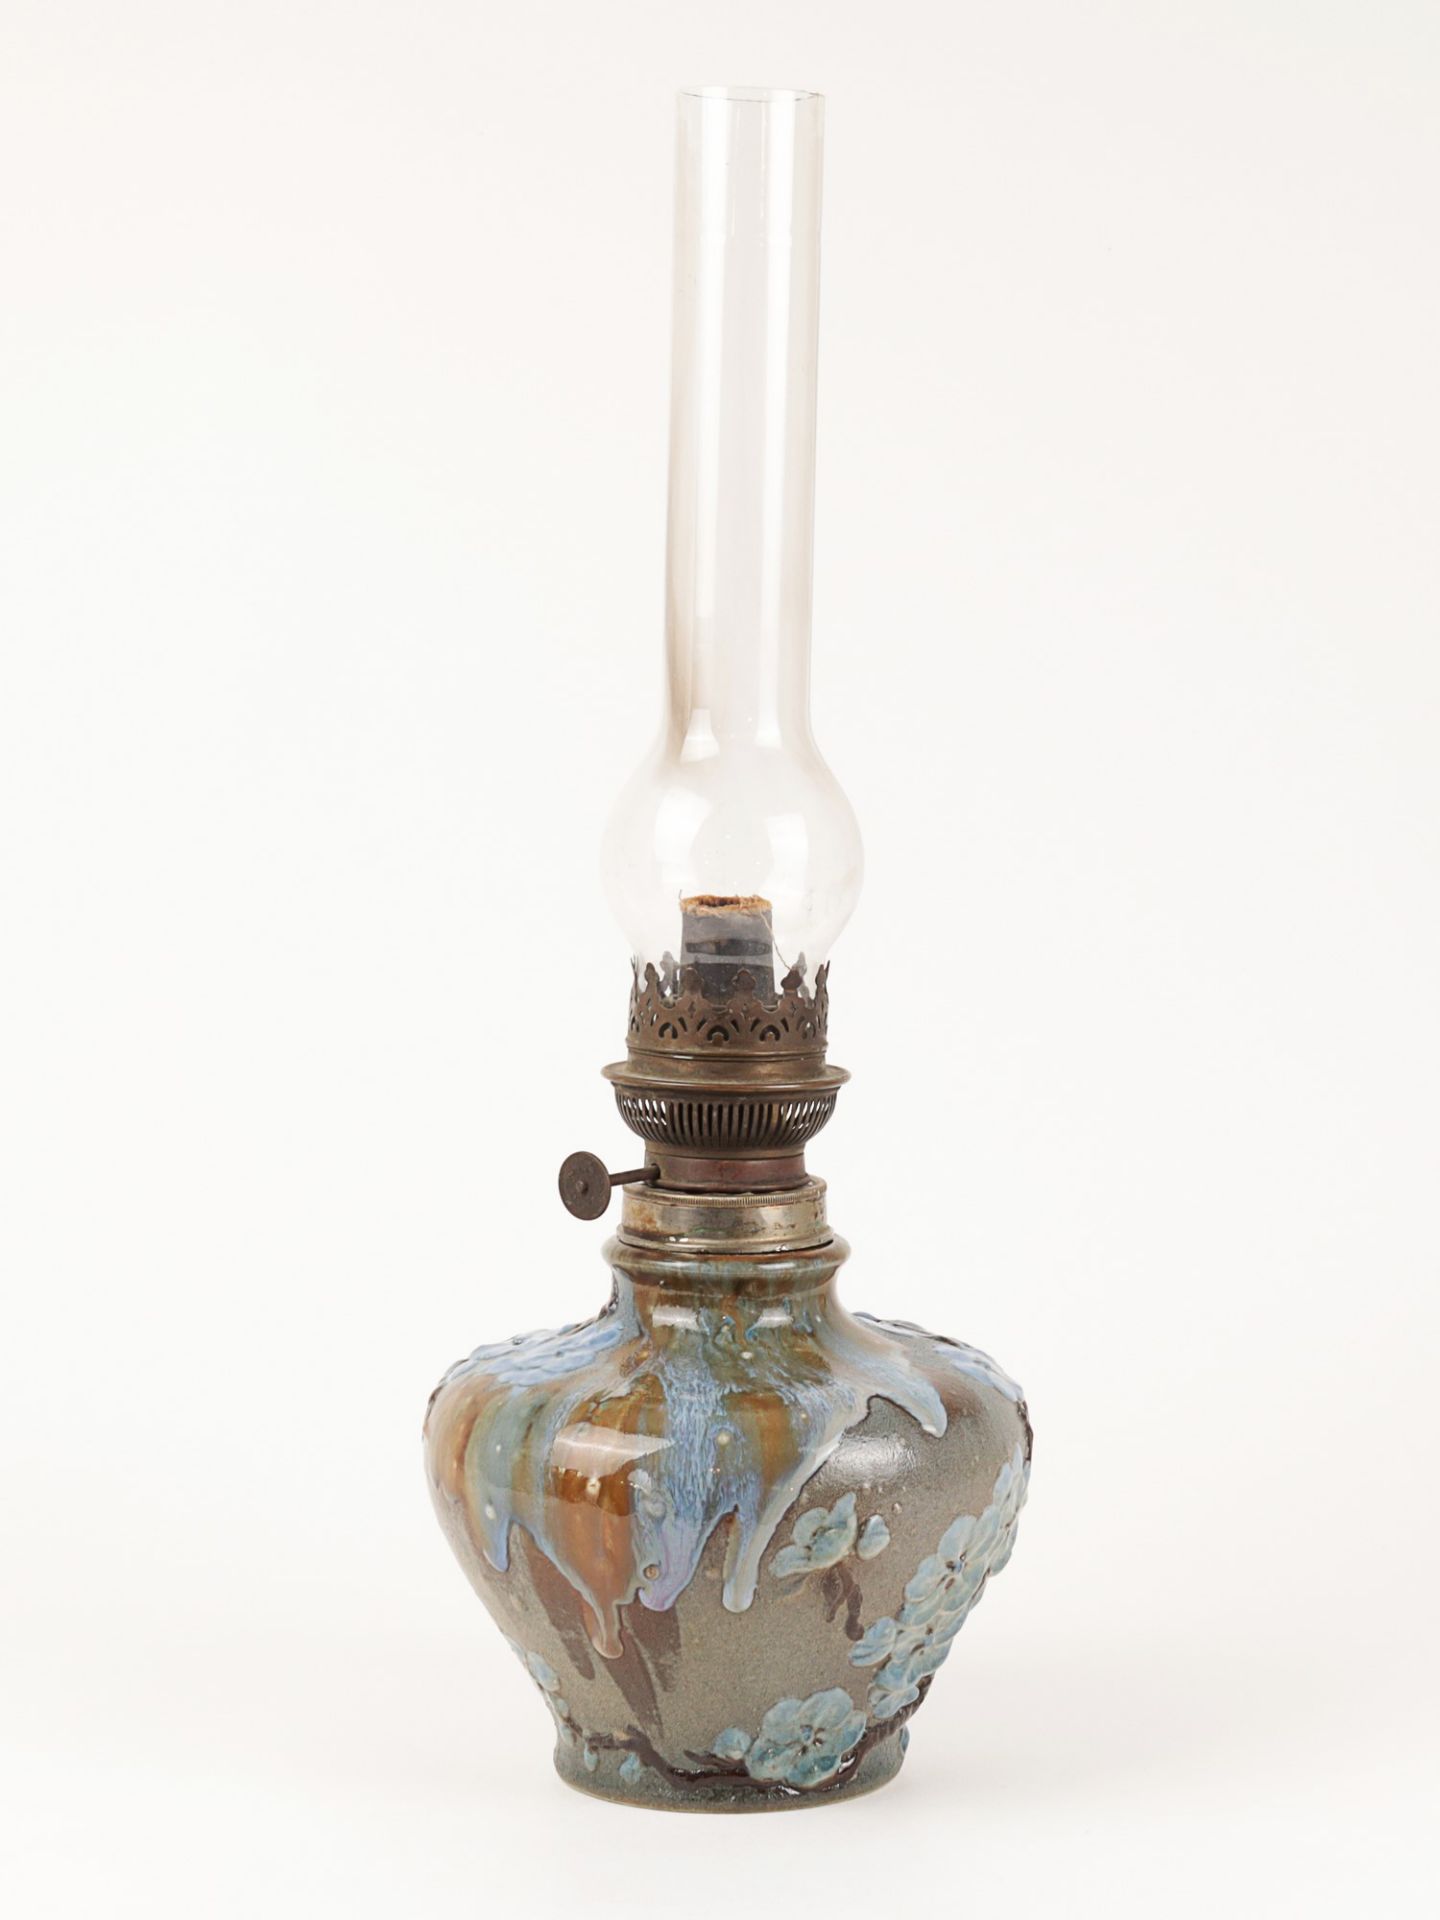 Petroleumlampe um 1900, Jugendstil, Frankreich, Hautin & Boulanger, Choisy-le-Roi, Nr. 1785 G 10,